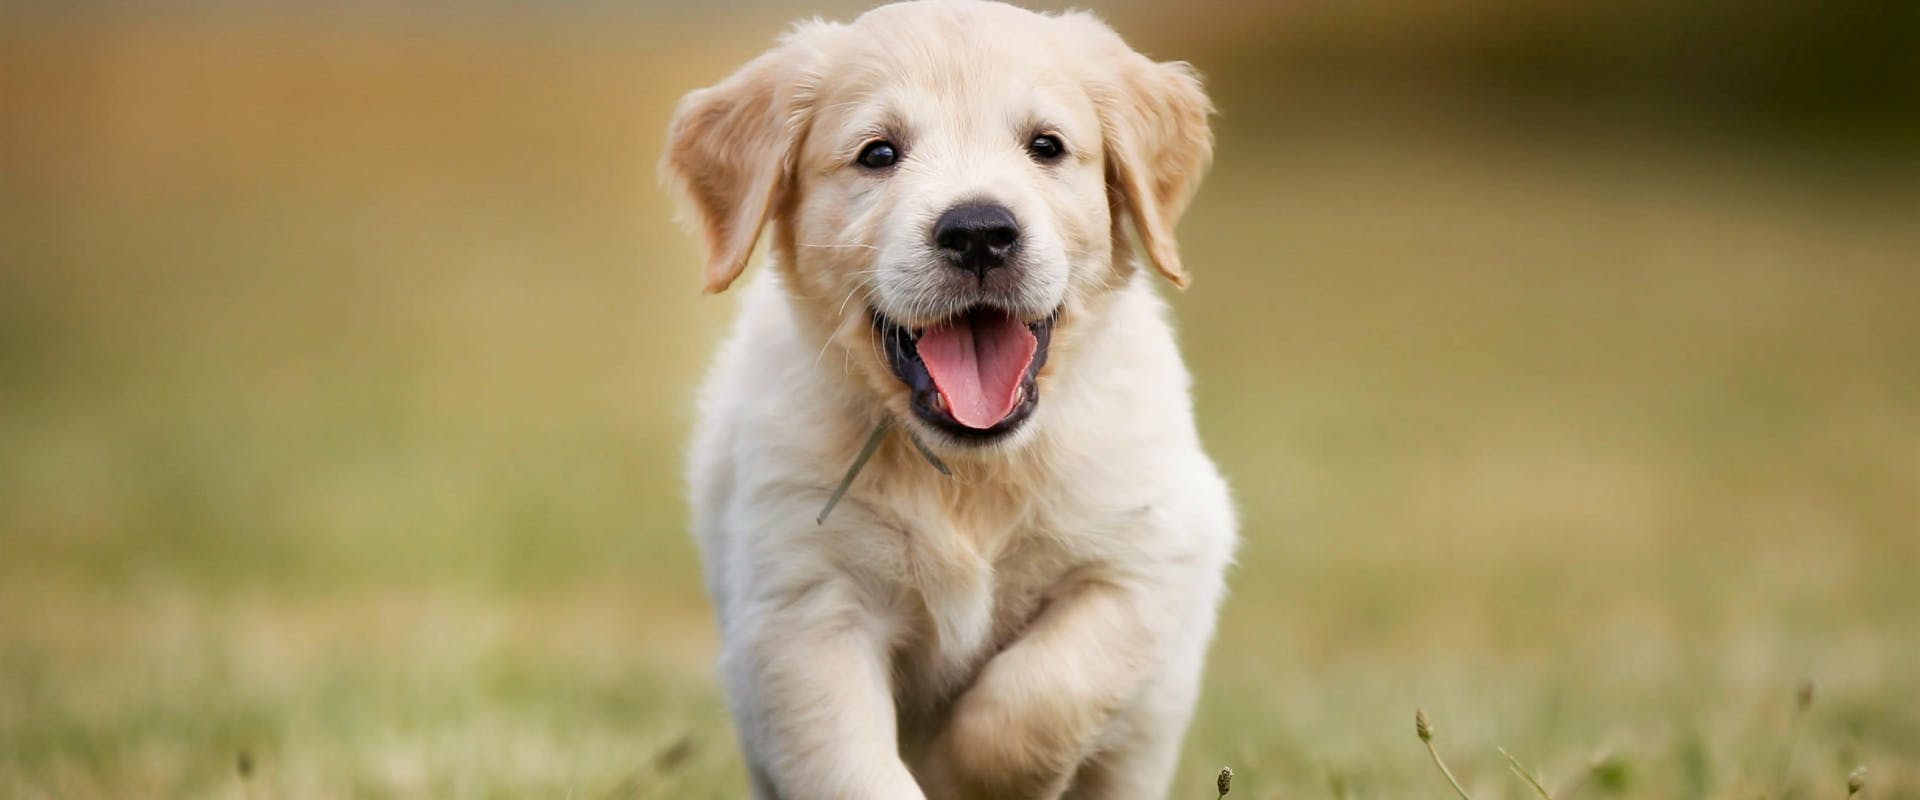 a golden retriever puppy running through a grass field